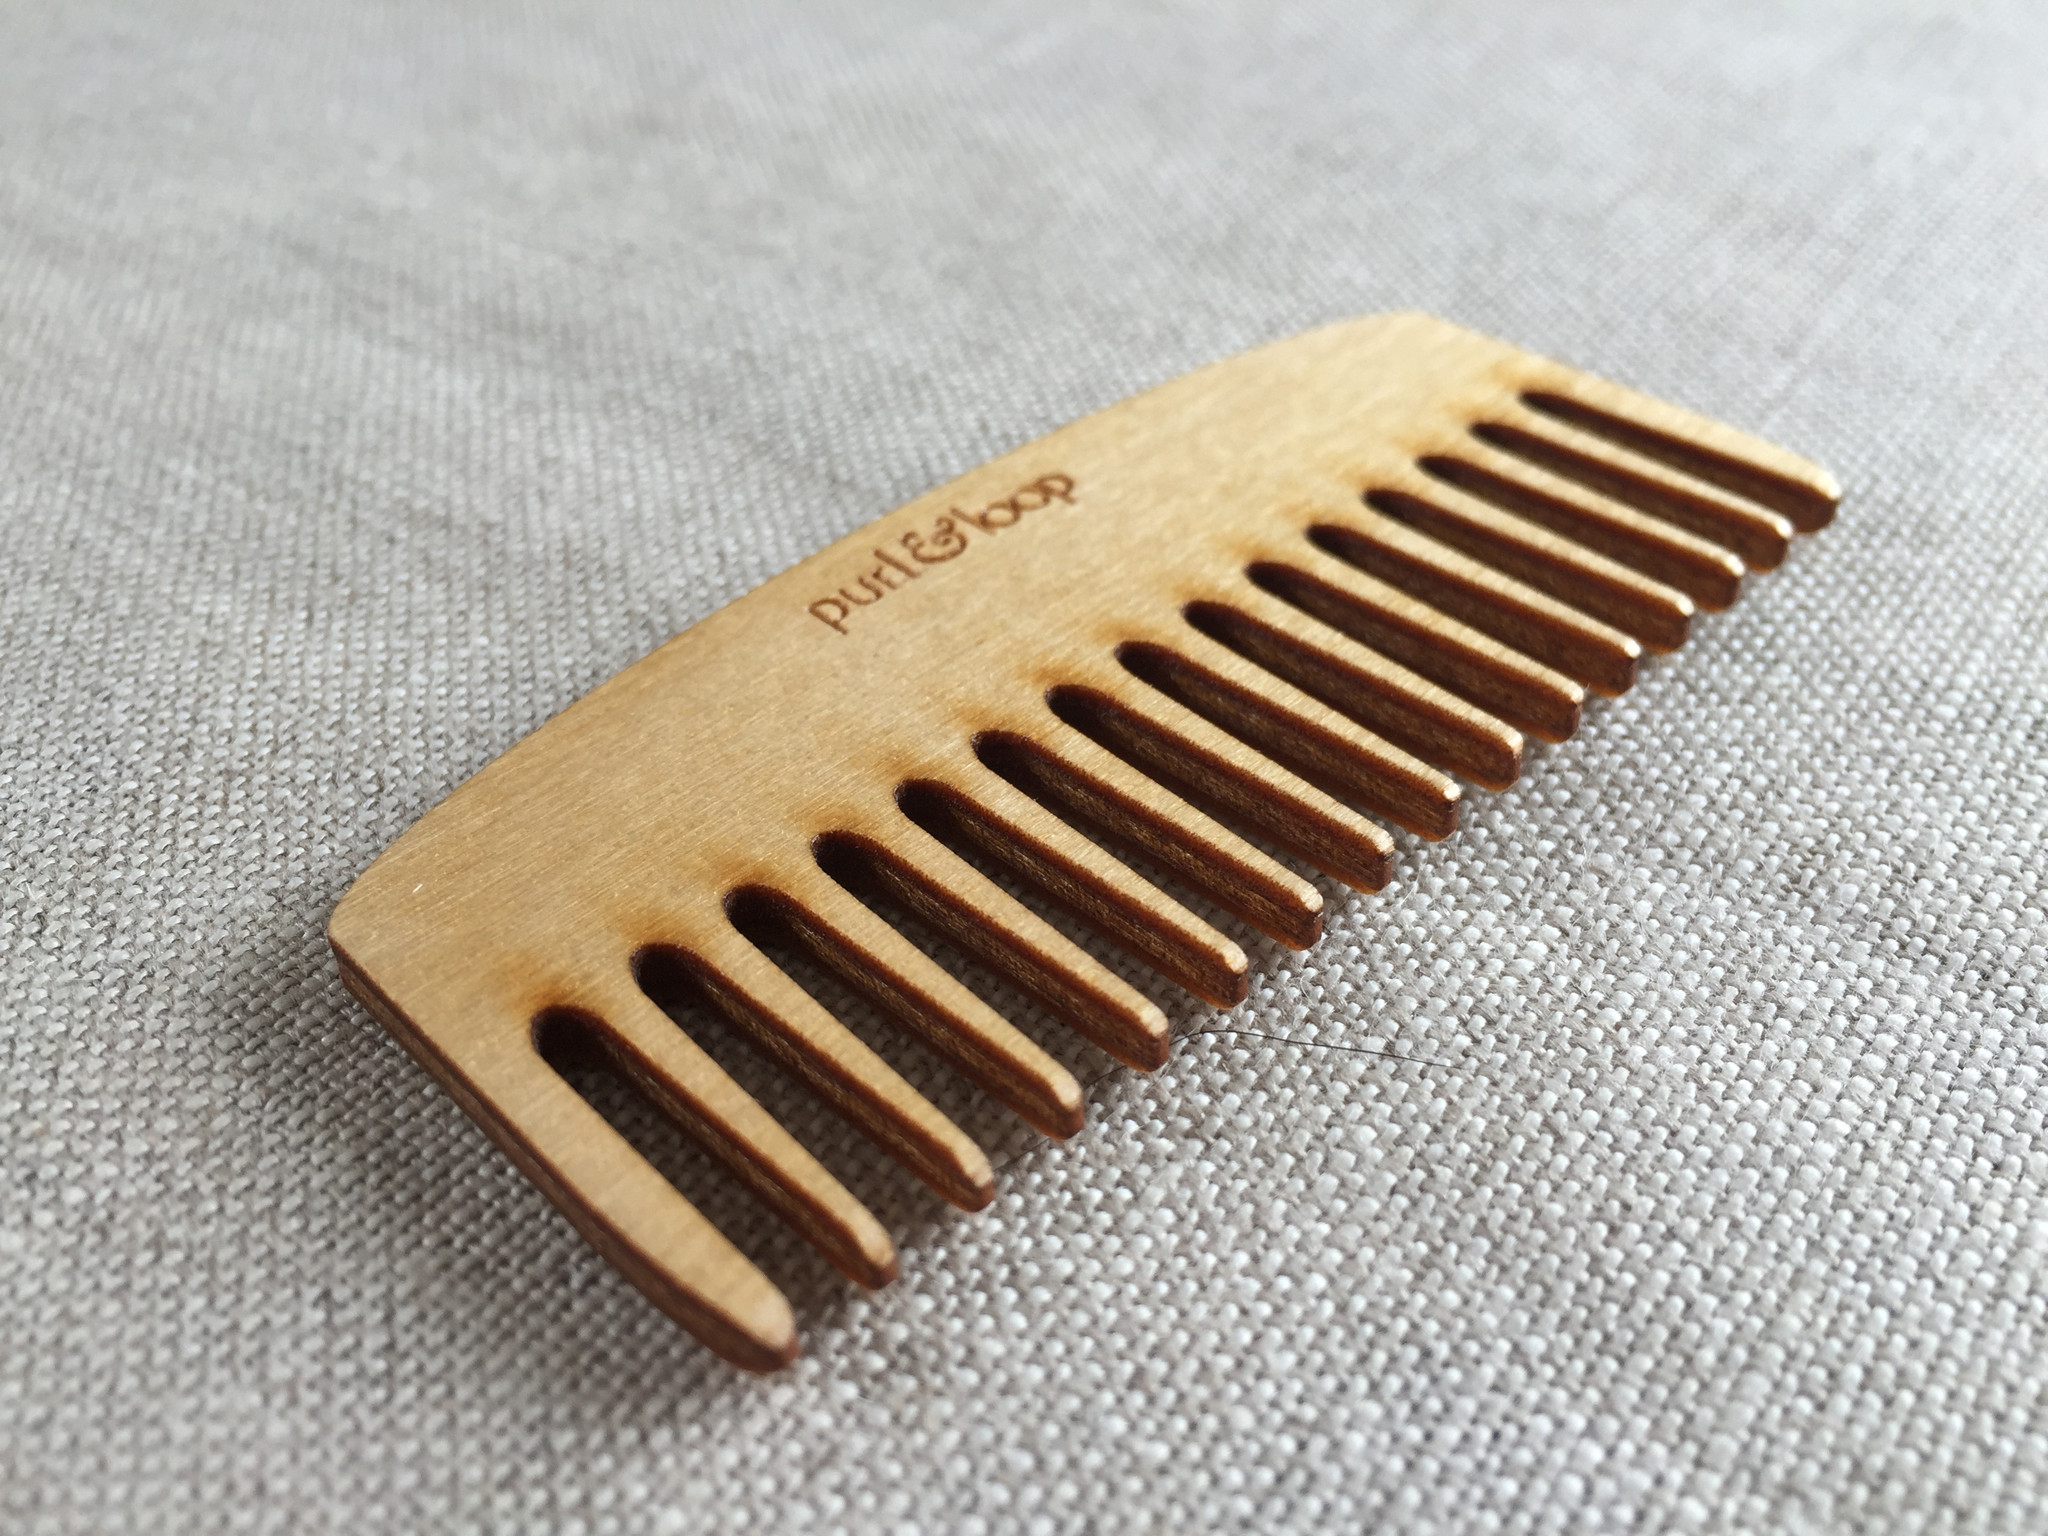 Parts & Tools: Weaving Comb